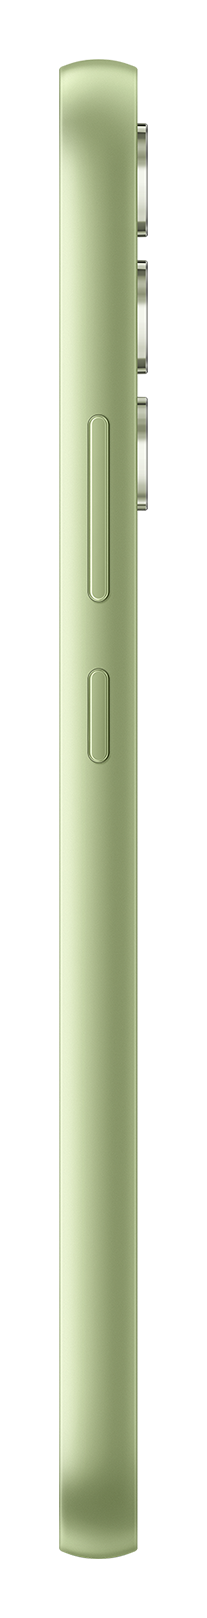 Samsung A34 light green side